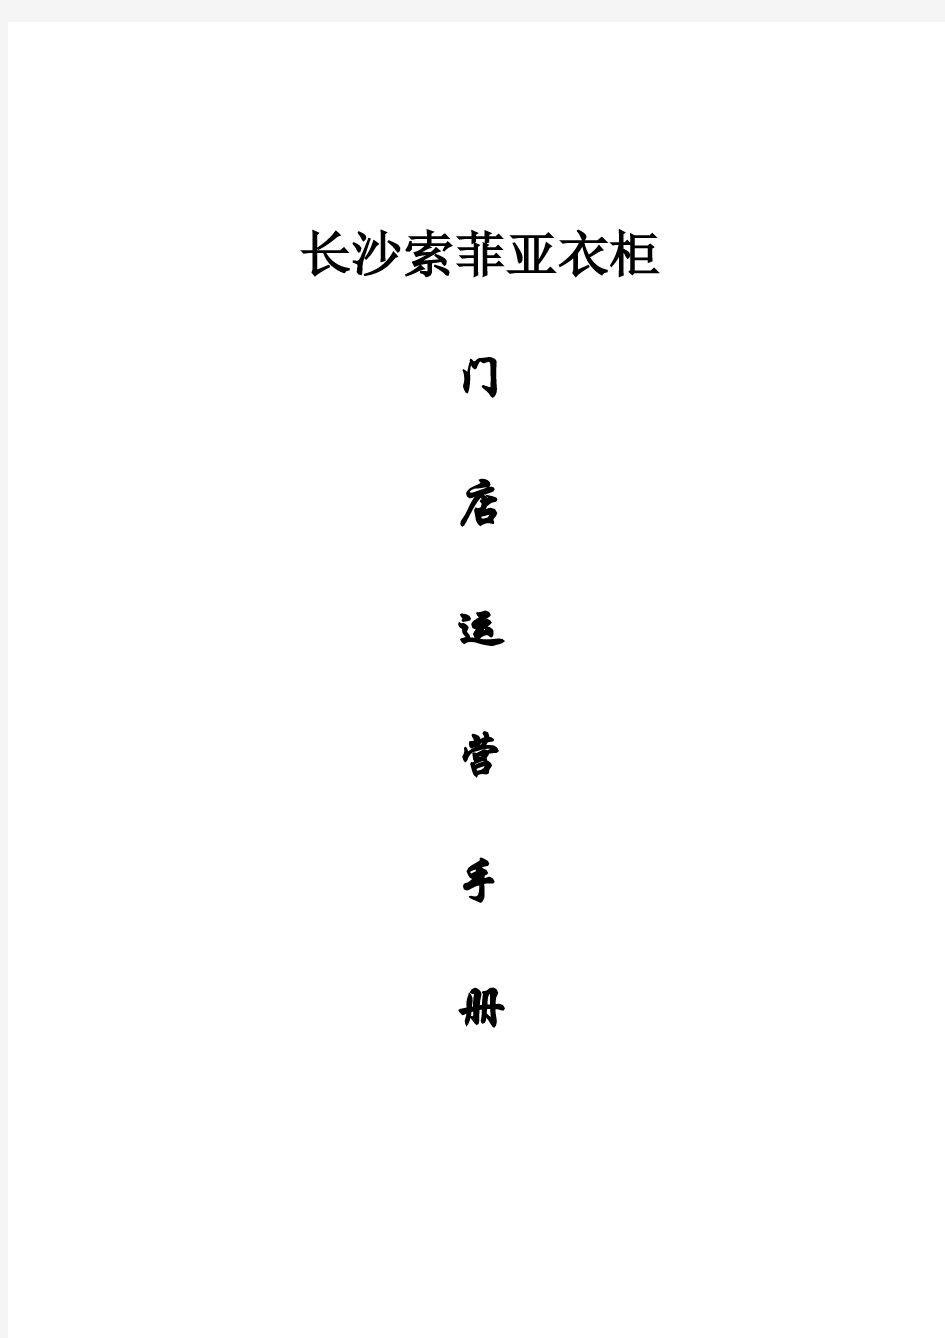 长沙索菲亚门店运营手册终-制定中pdf